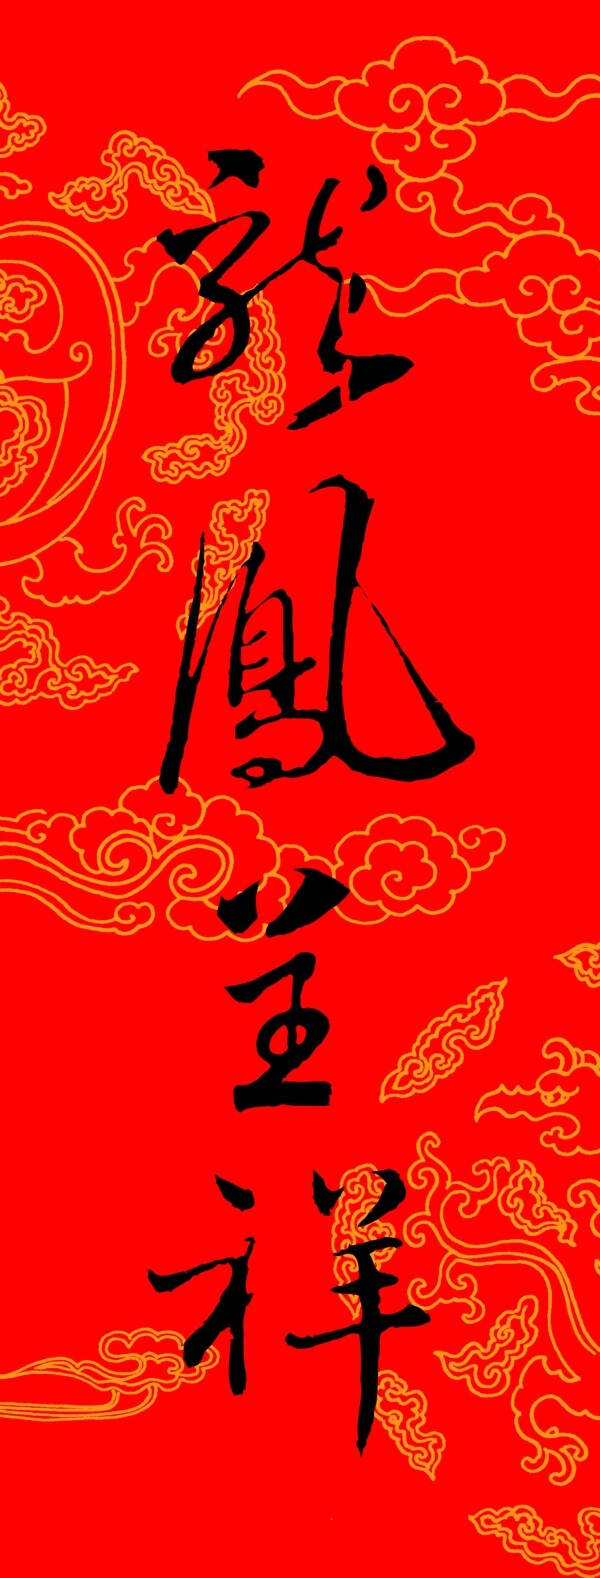 圣诞新年喜庆红红火火福贺新年艺术作品文化遗产中华艺术绘画